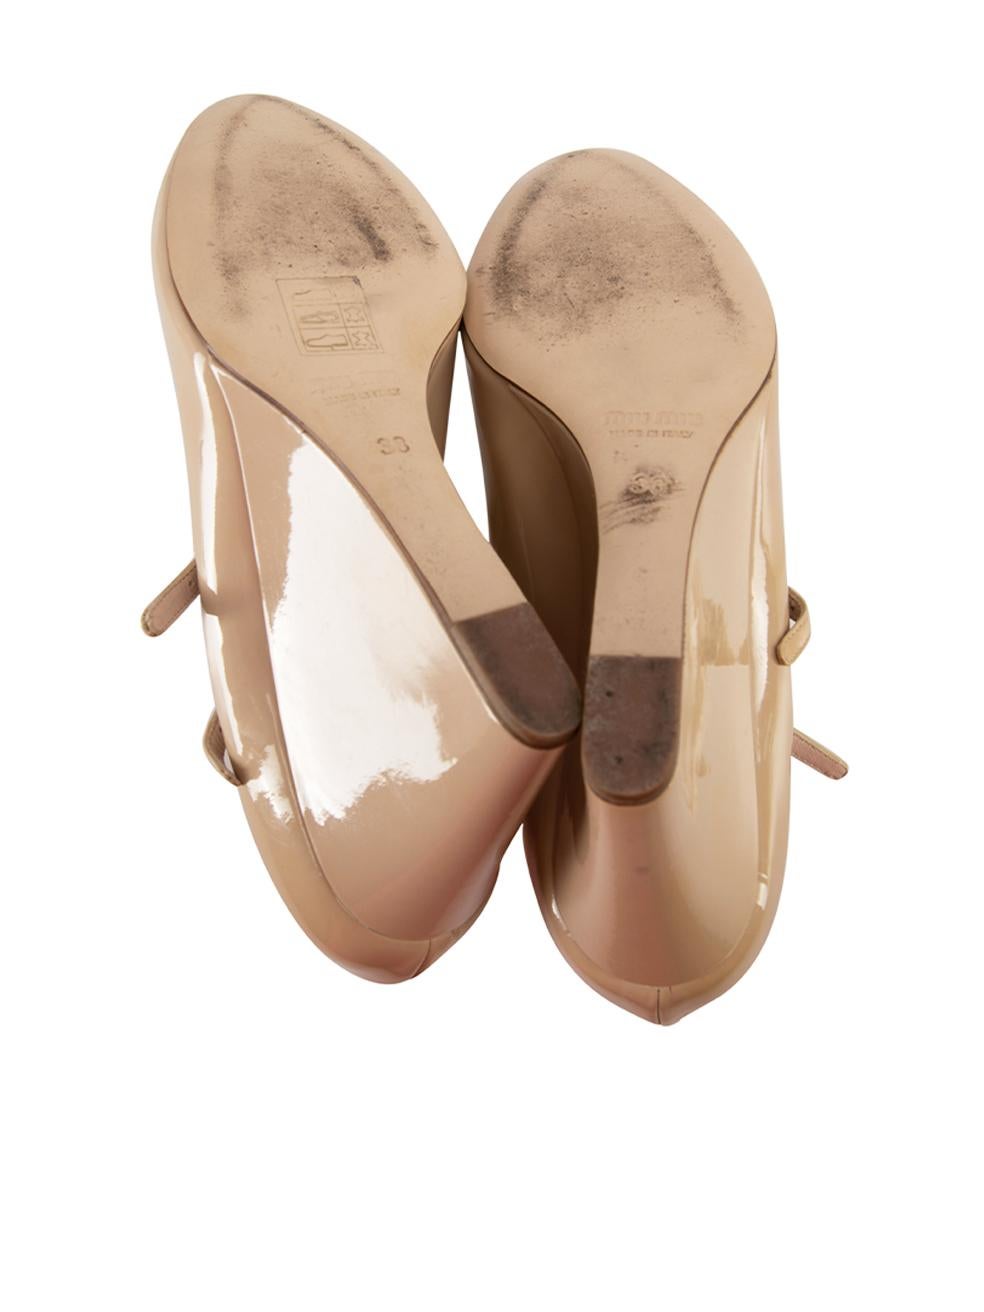 Women's Beige Patent Mary Jane Wedge Heels Size IT 38